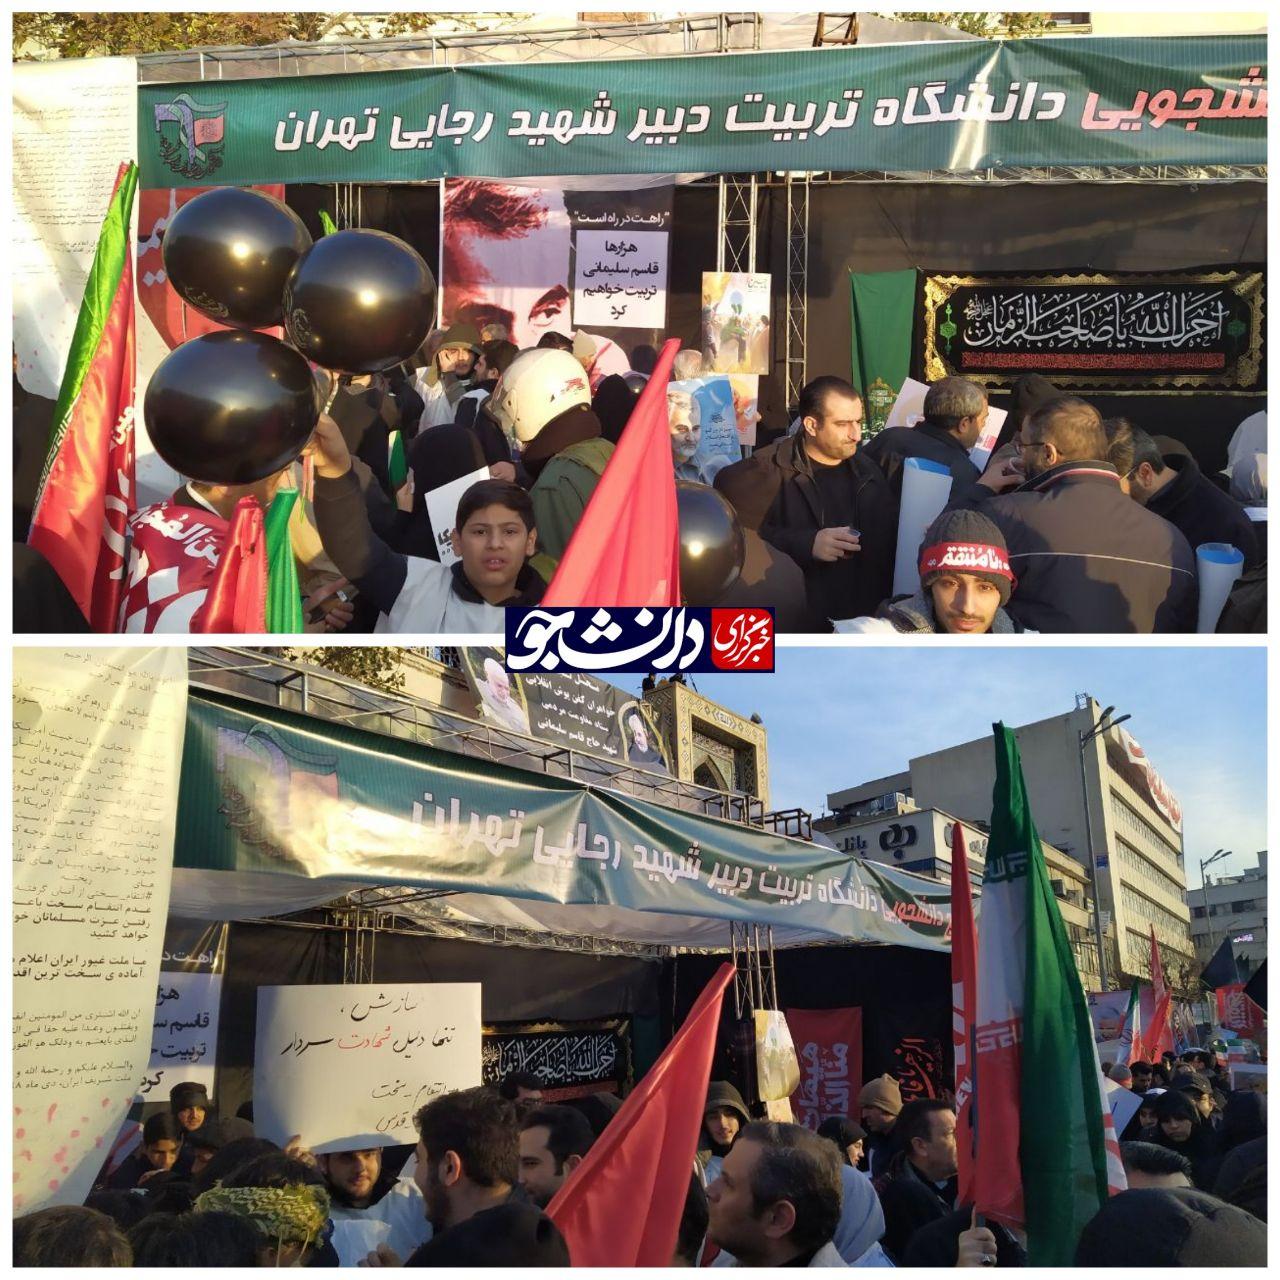 غرفه دانشگاه شهید رجایی در میدان انقلاب برپا شد + عکس